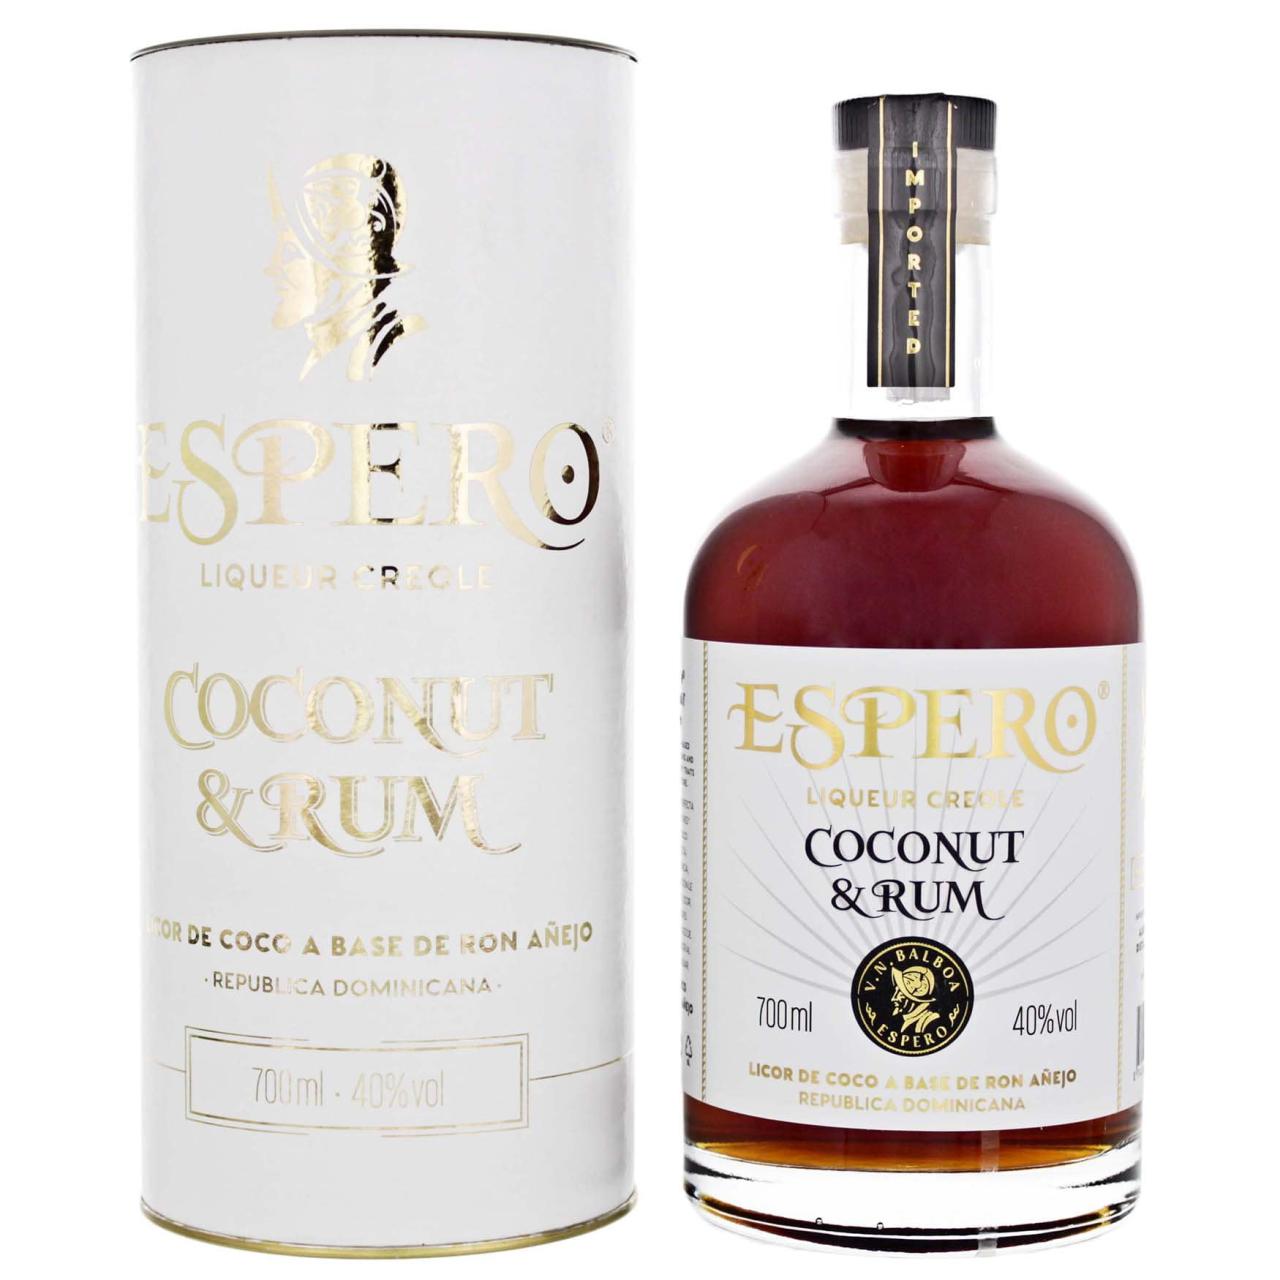 Espero Coconut & Rum 40% 0,7l